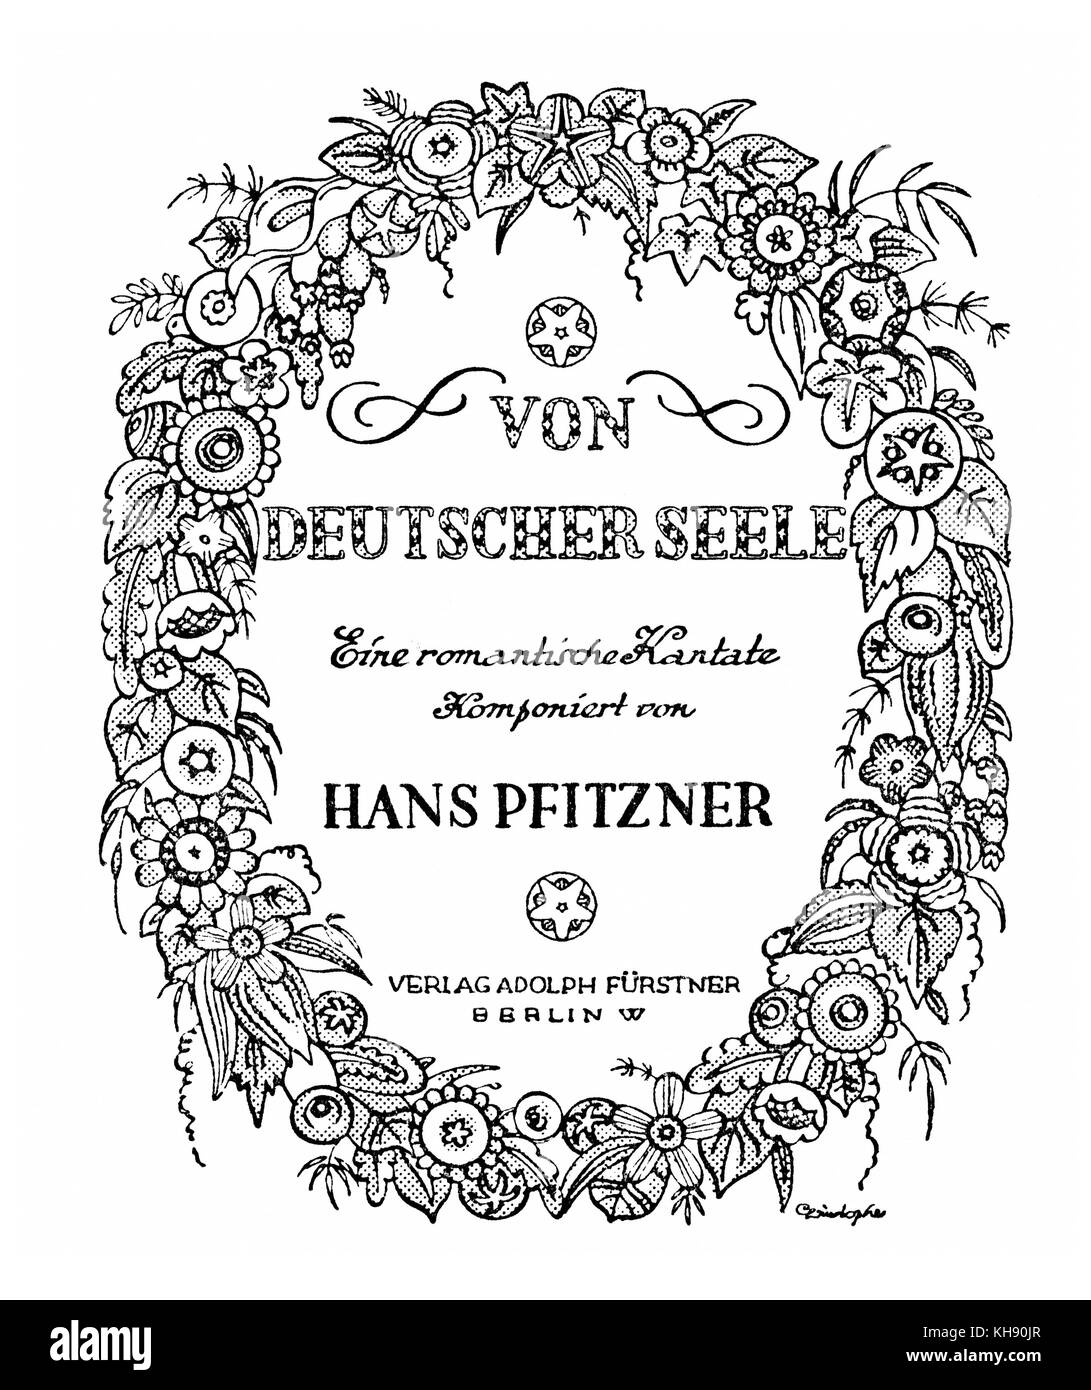 Hans Pfitzner 's cantata "Von deutscher Seele' - Punteggio illustrazione del coperchio. Compositore tedesco, 5 maggio 1869 - 22 maggio 1949. Foto Stock